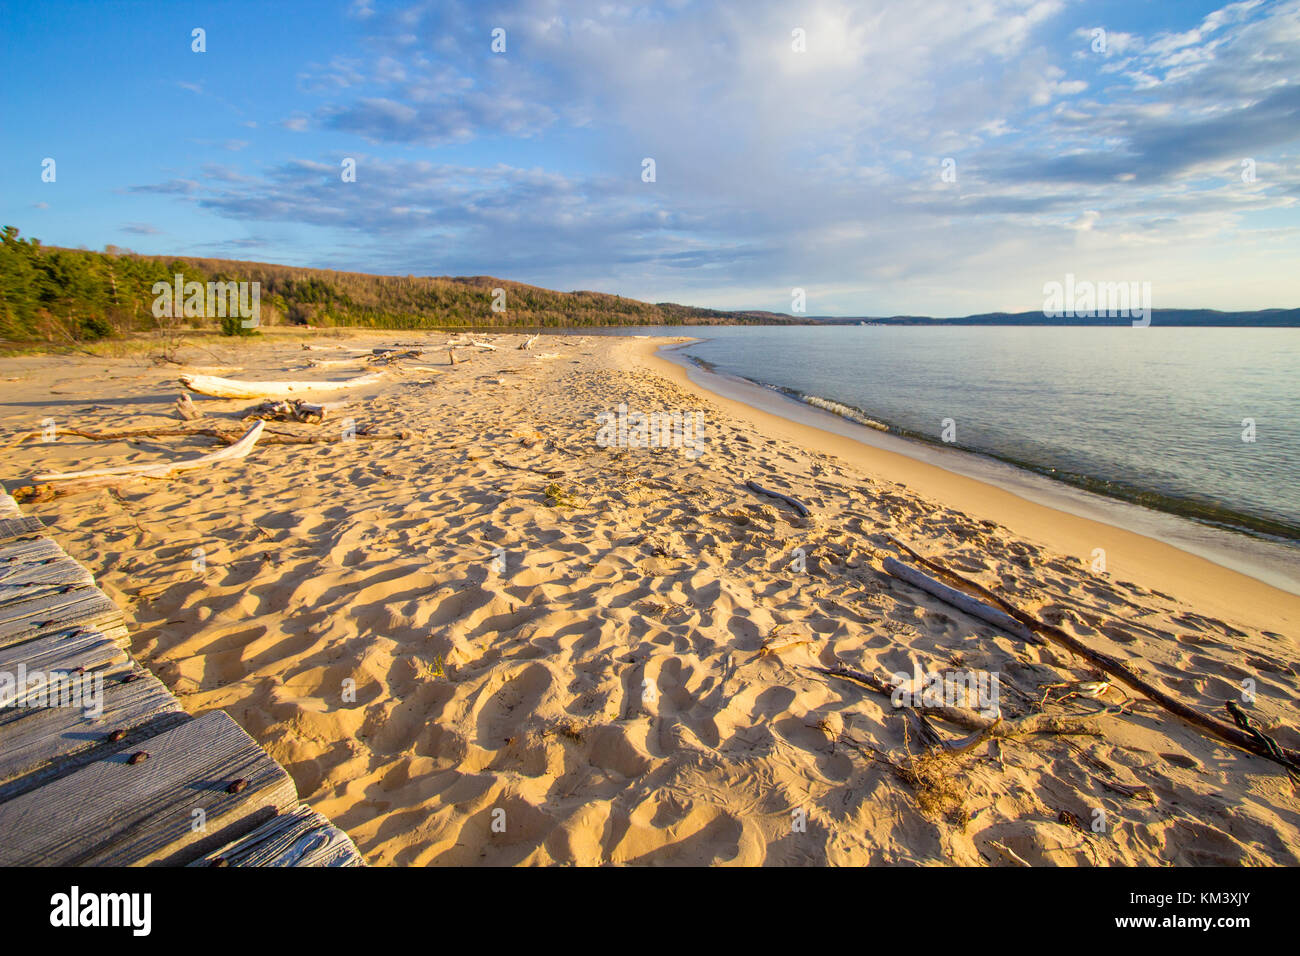 Panorama de plage en été. Une large plage de sable sur les rives du lac Supérieur sur une journée ensoleillée dans Pictured Rocks National Lakeshore, dans le Michigan. Banque D'Images